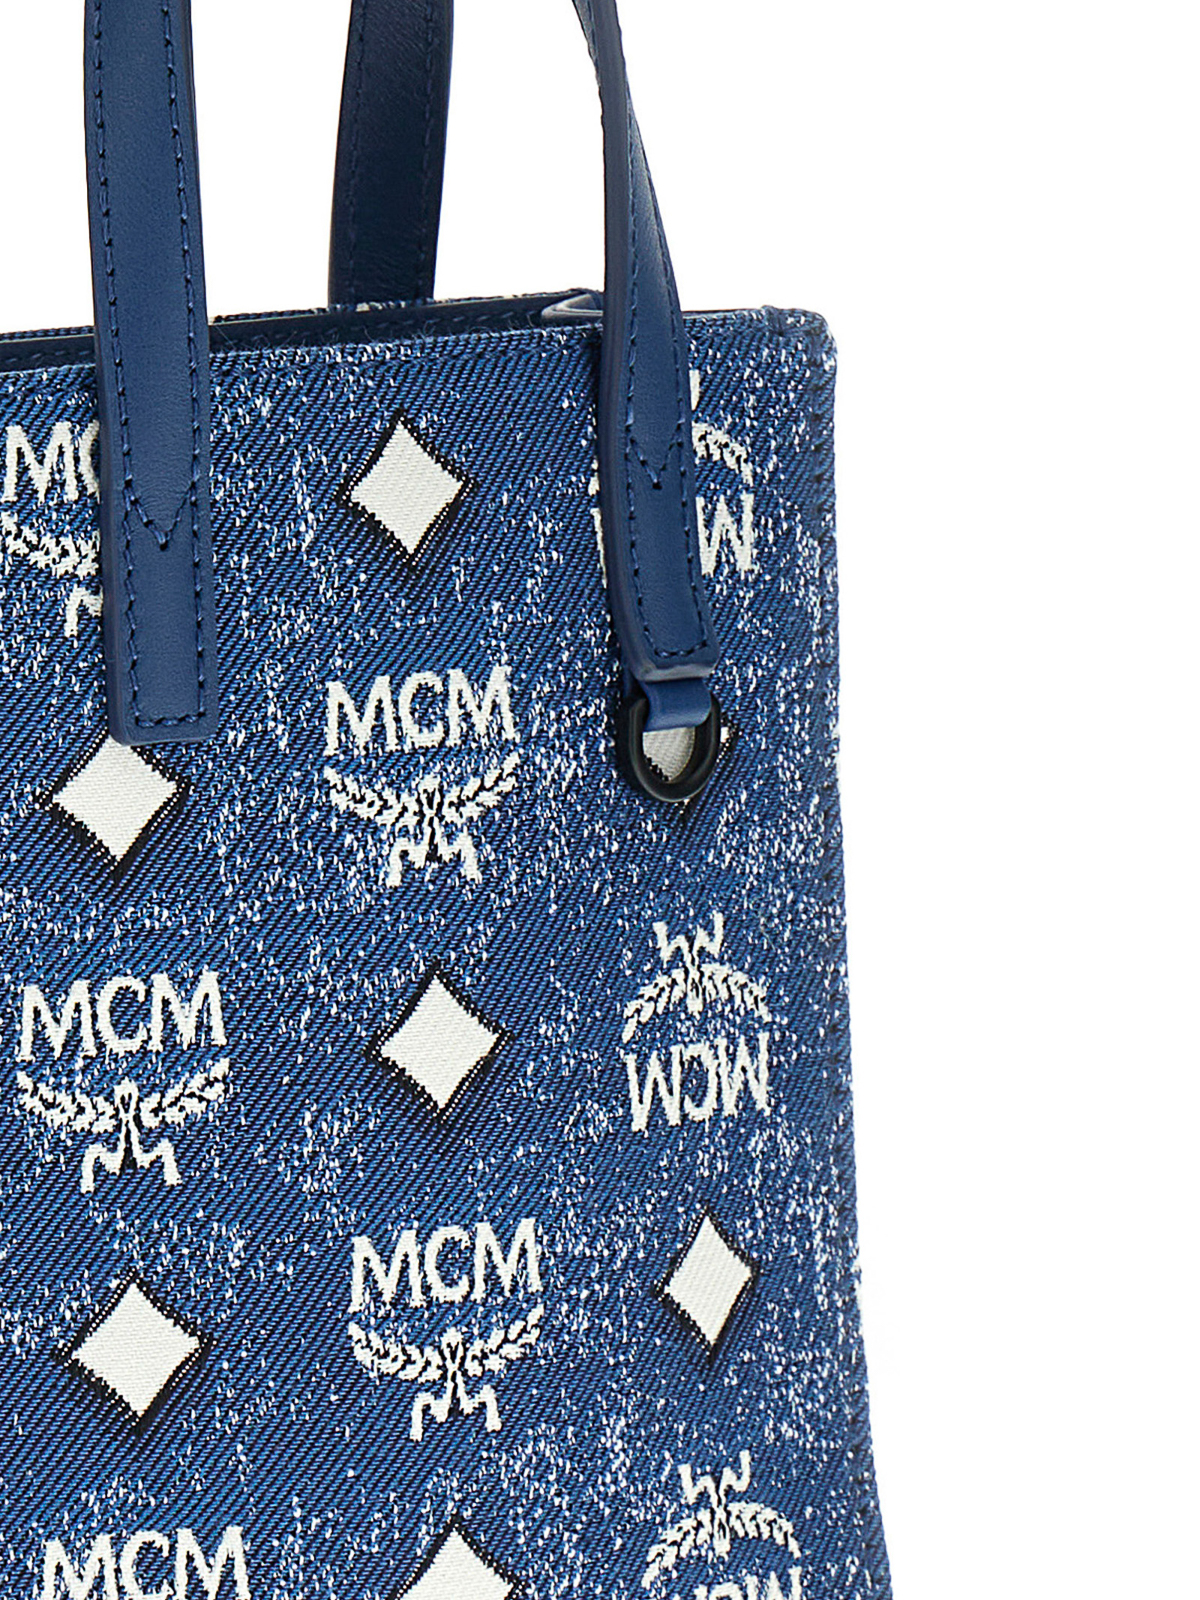 Mcm Women's Tote Bag